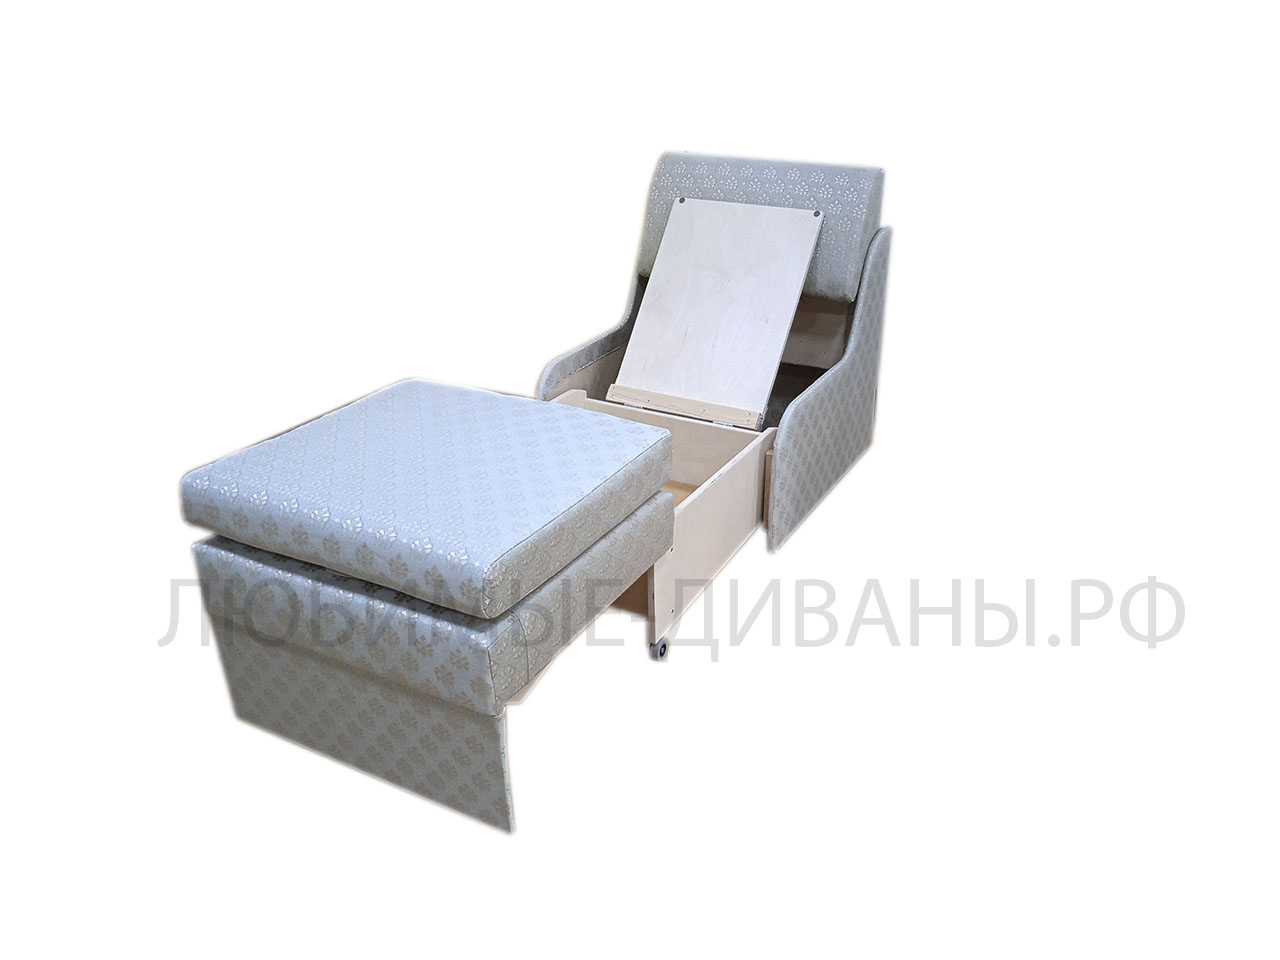 Мини кресло кровать Танго-4 Д-60 глубиной 65 см. Габаритный размер 65 х 65 см. Спальное место 60 х 160 см.